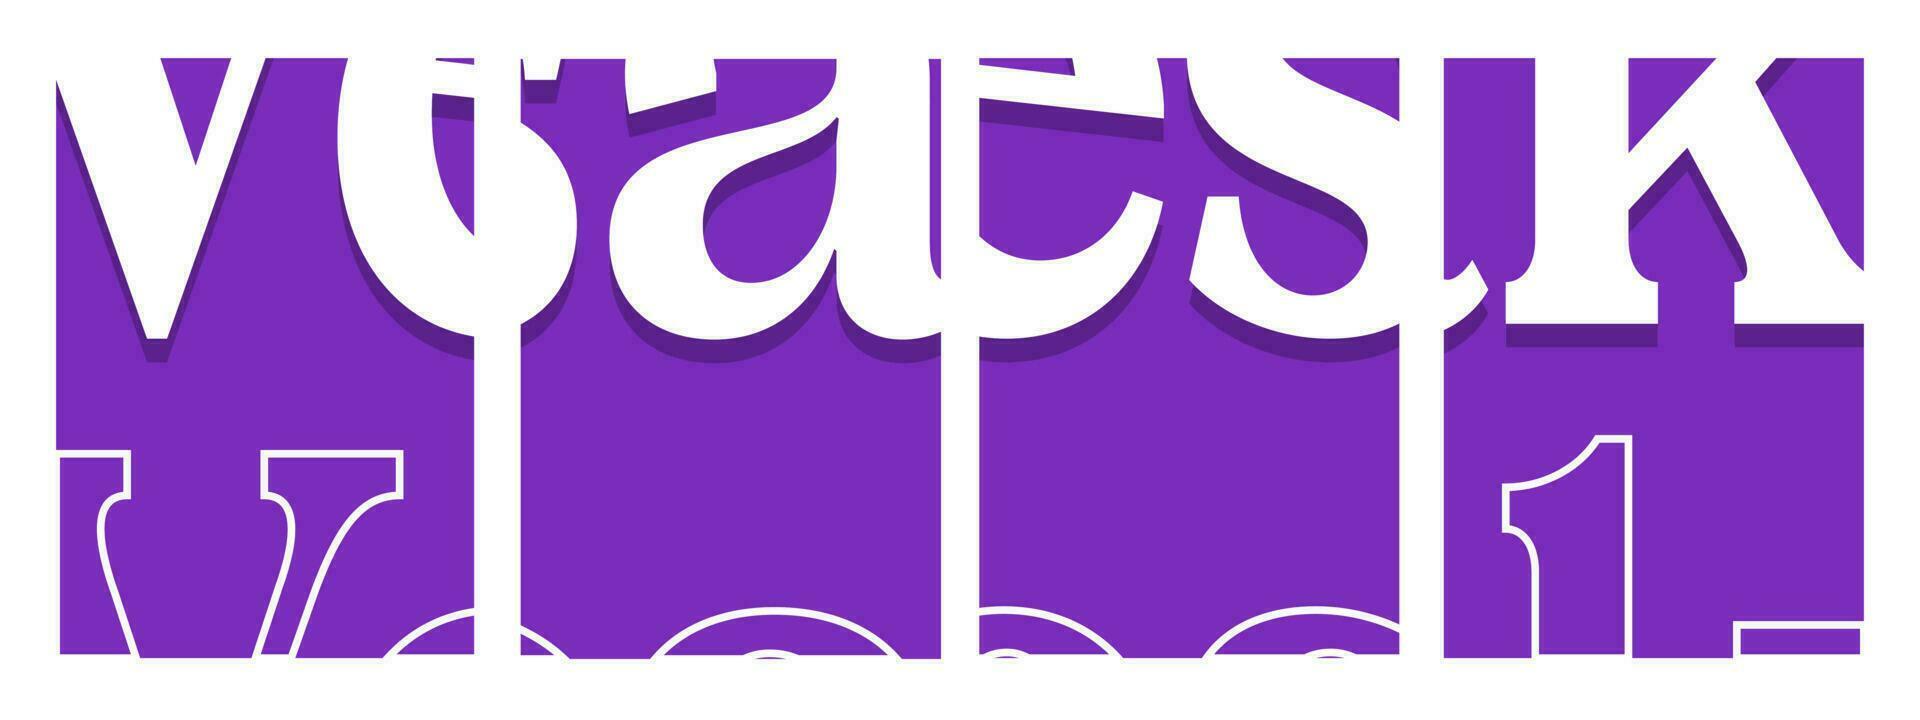 impostato di Vesak giorno sfondo. astratto tipografia viola. modelli per celebrazione, Annunci, marchio, striscione, coperchio, etichetta, manifesto, i saldi vettore